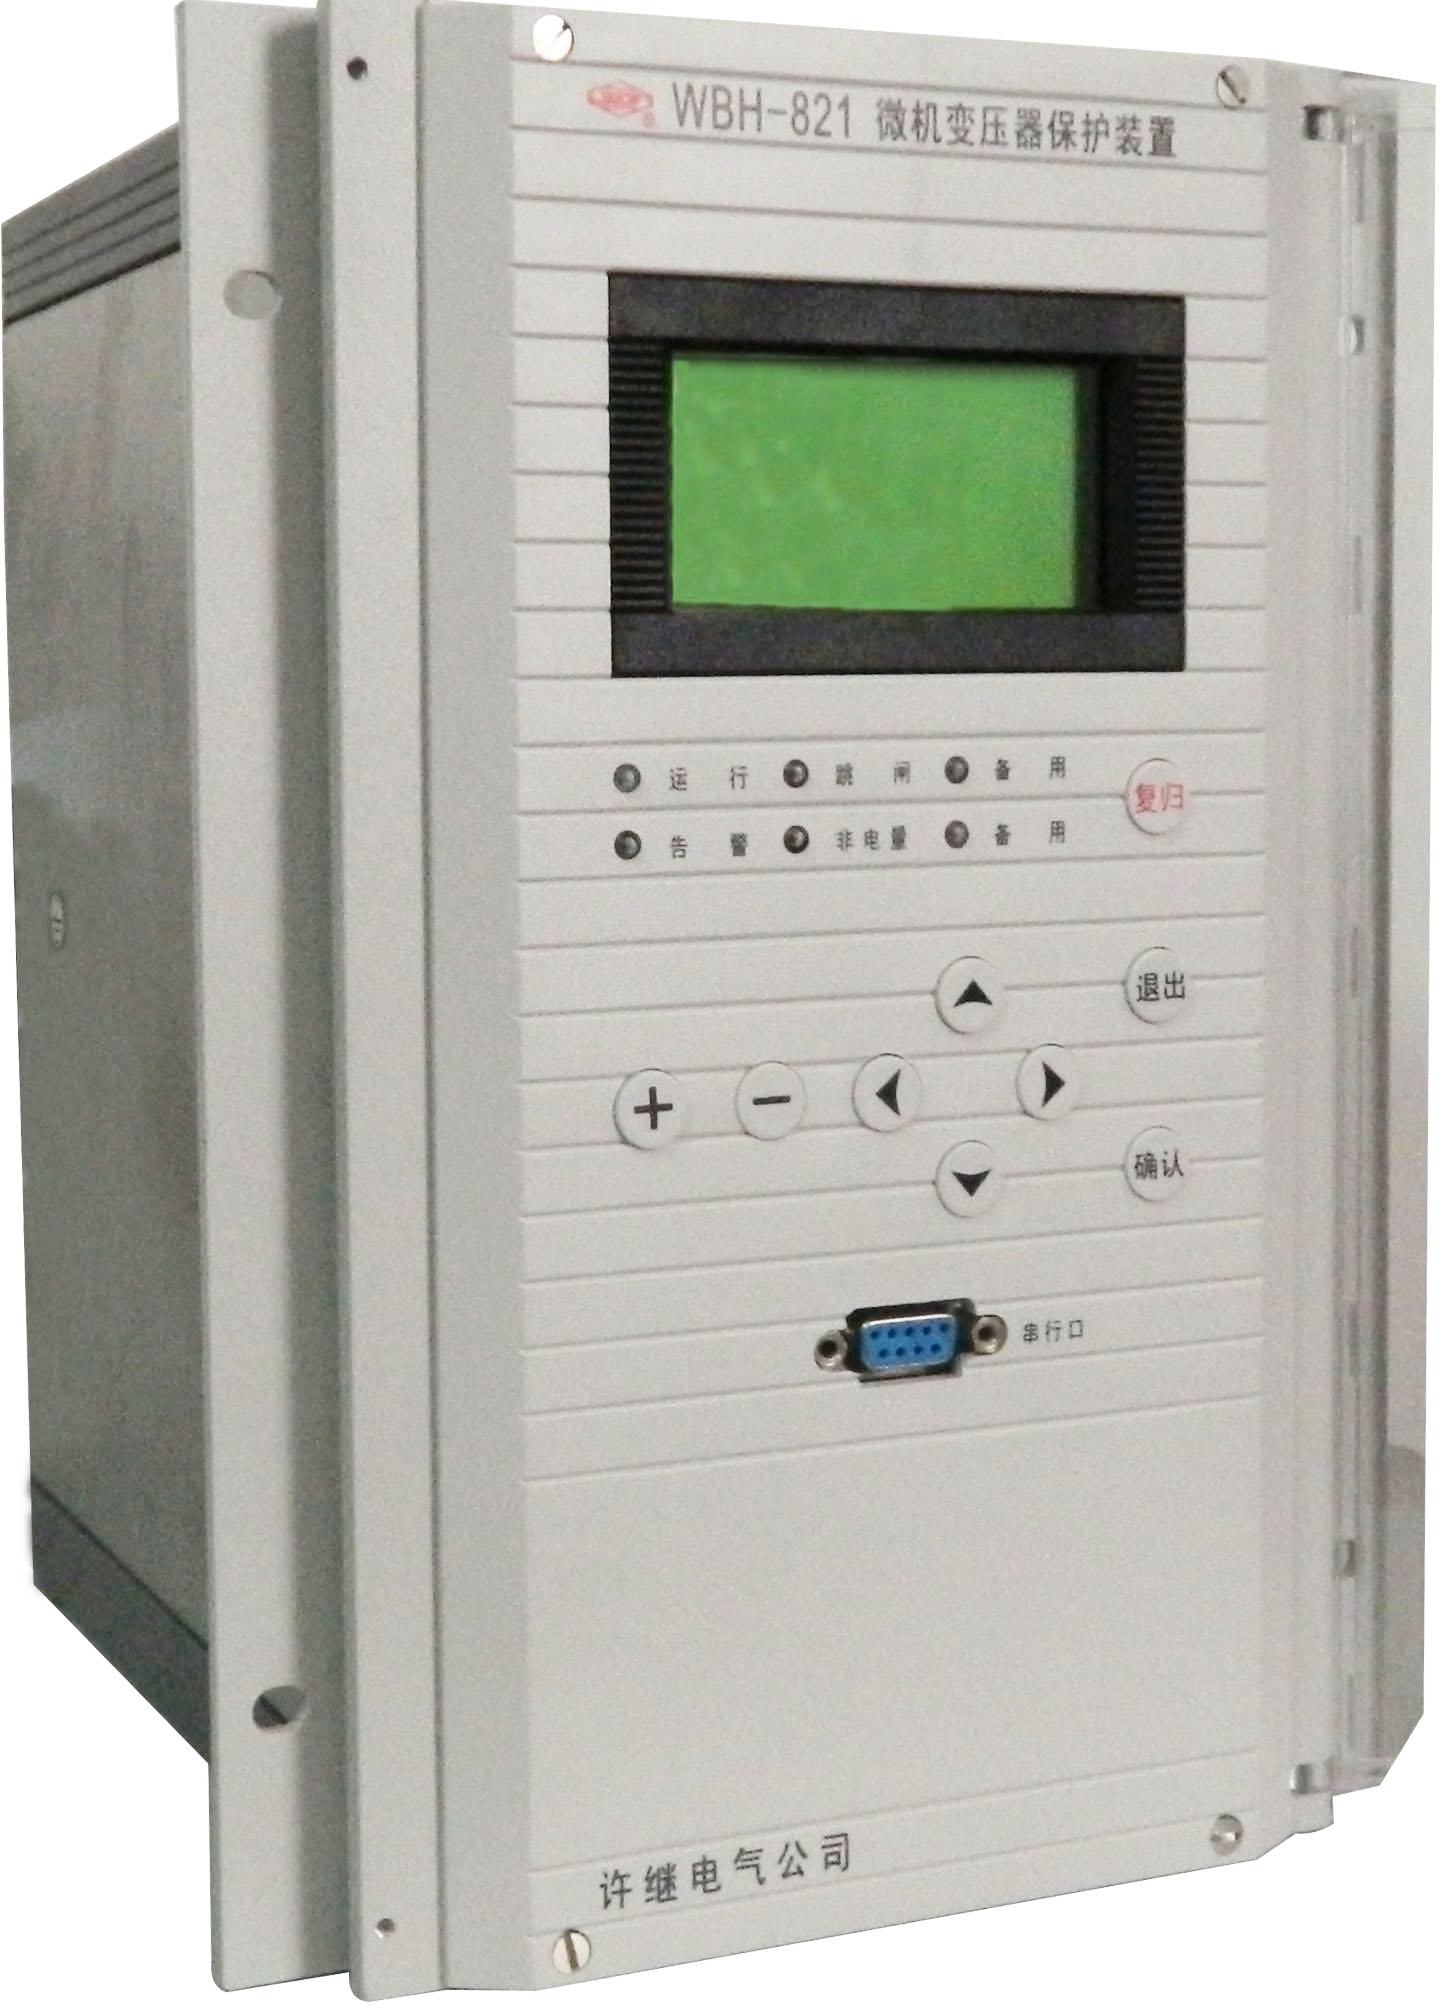 其他配电输电设备 现货供应FCK-821A许继微机测控装置